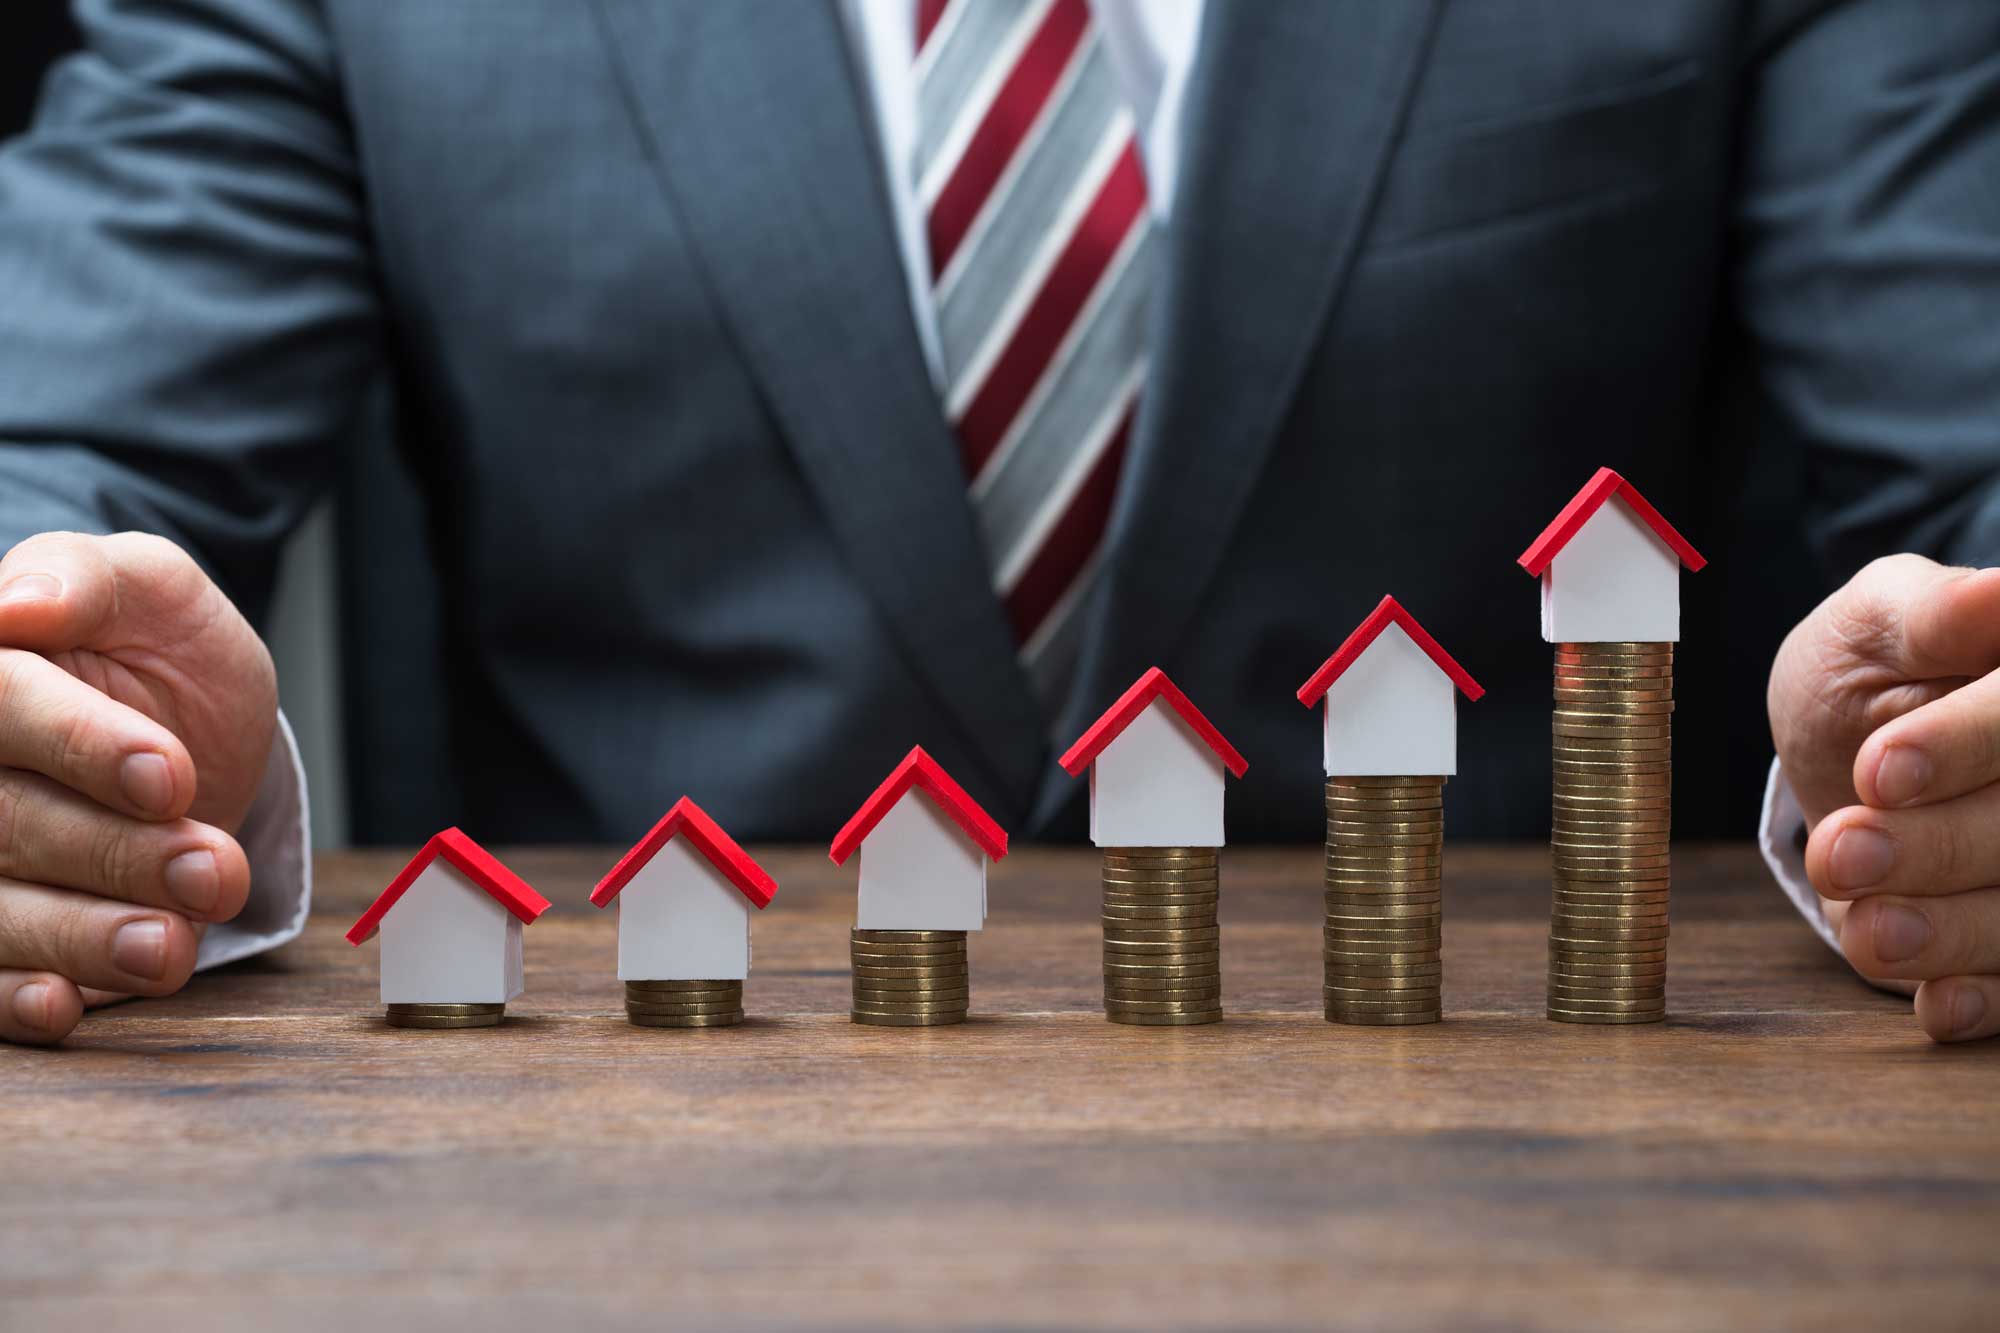 Инвестирование в недвижимость: 5 лайфхаков, как выгодно вложить деньги в отечественный и зарубежный рынок + ценные рекомендации будущим инвесторам